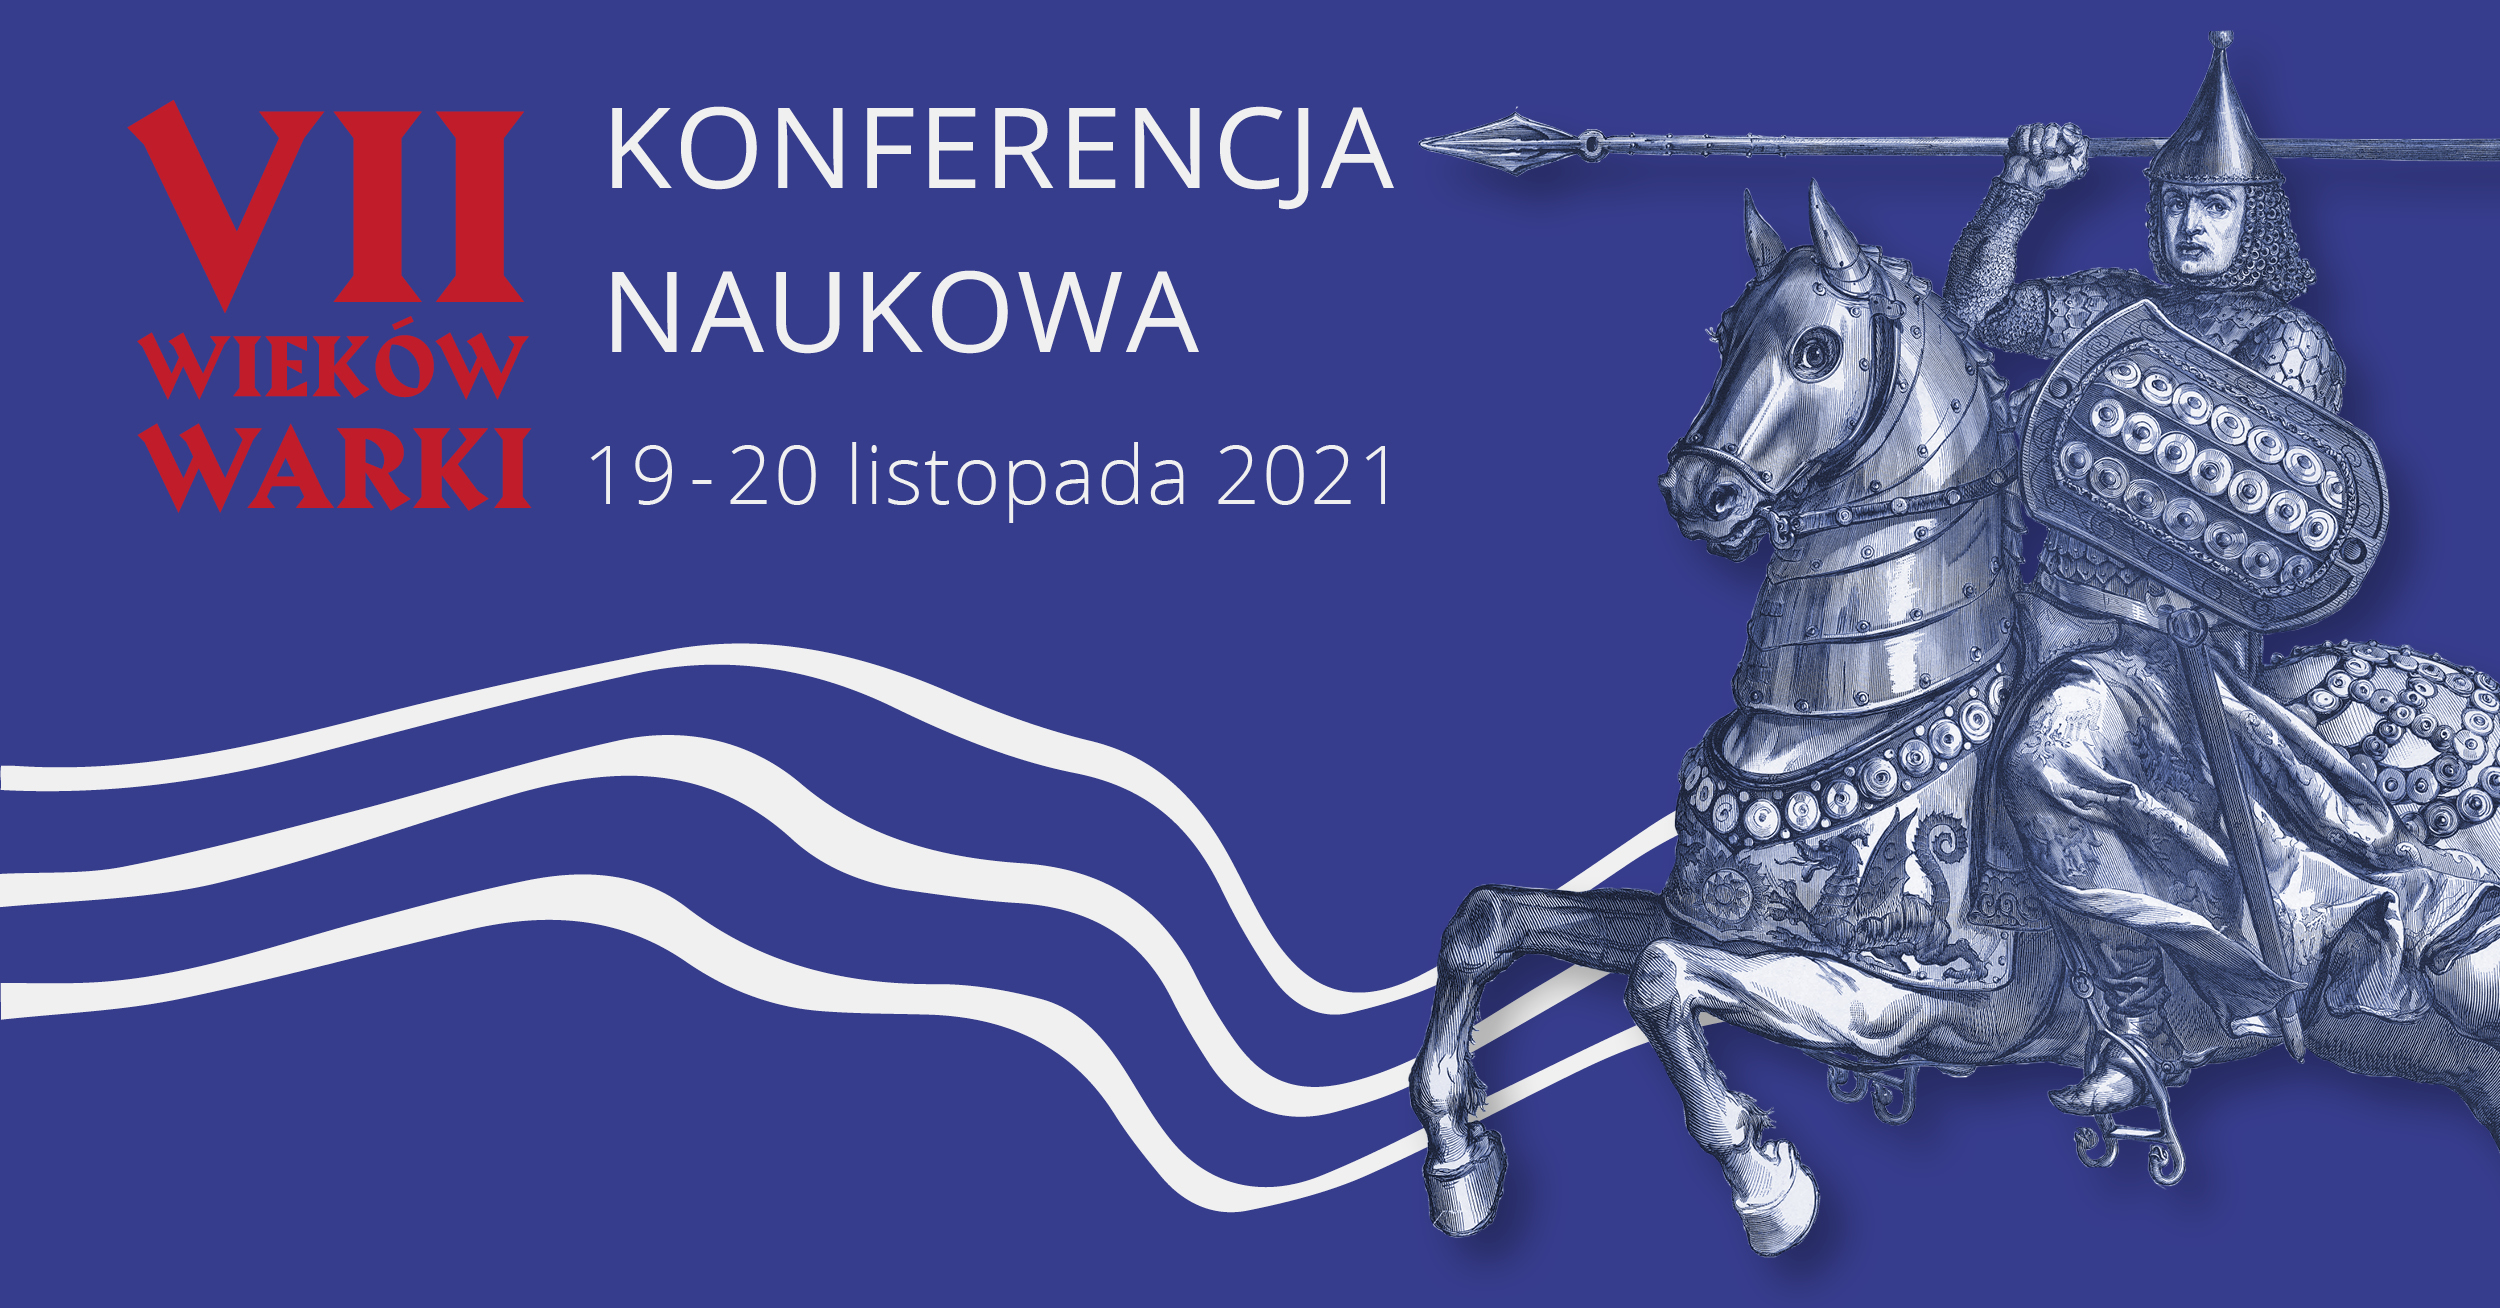 Plakat konferencji z wizerunkiem rycerza na koniu, tytułem: VII wieków Warki i datą: 19-20 listopada 2021